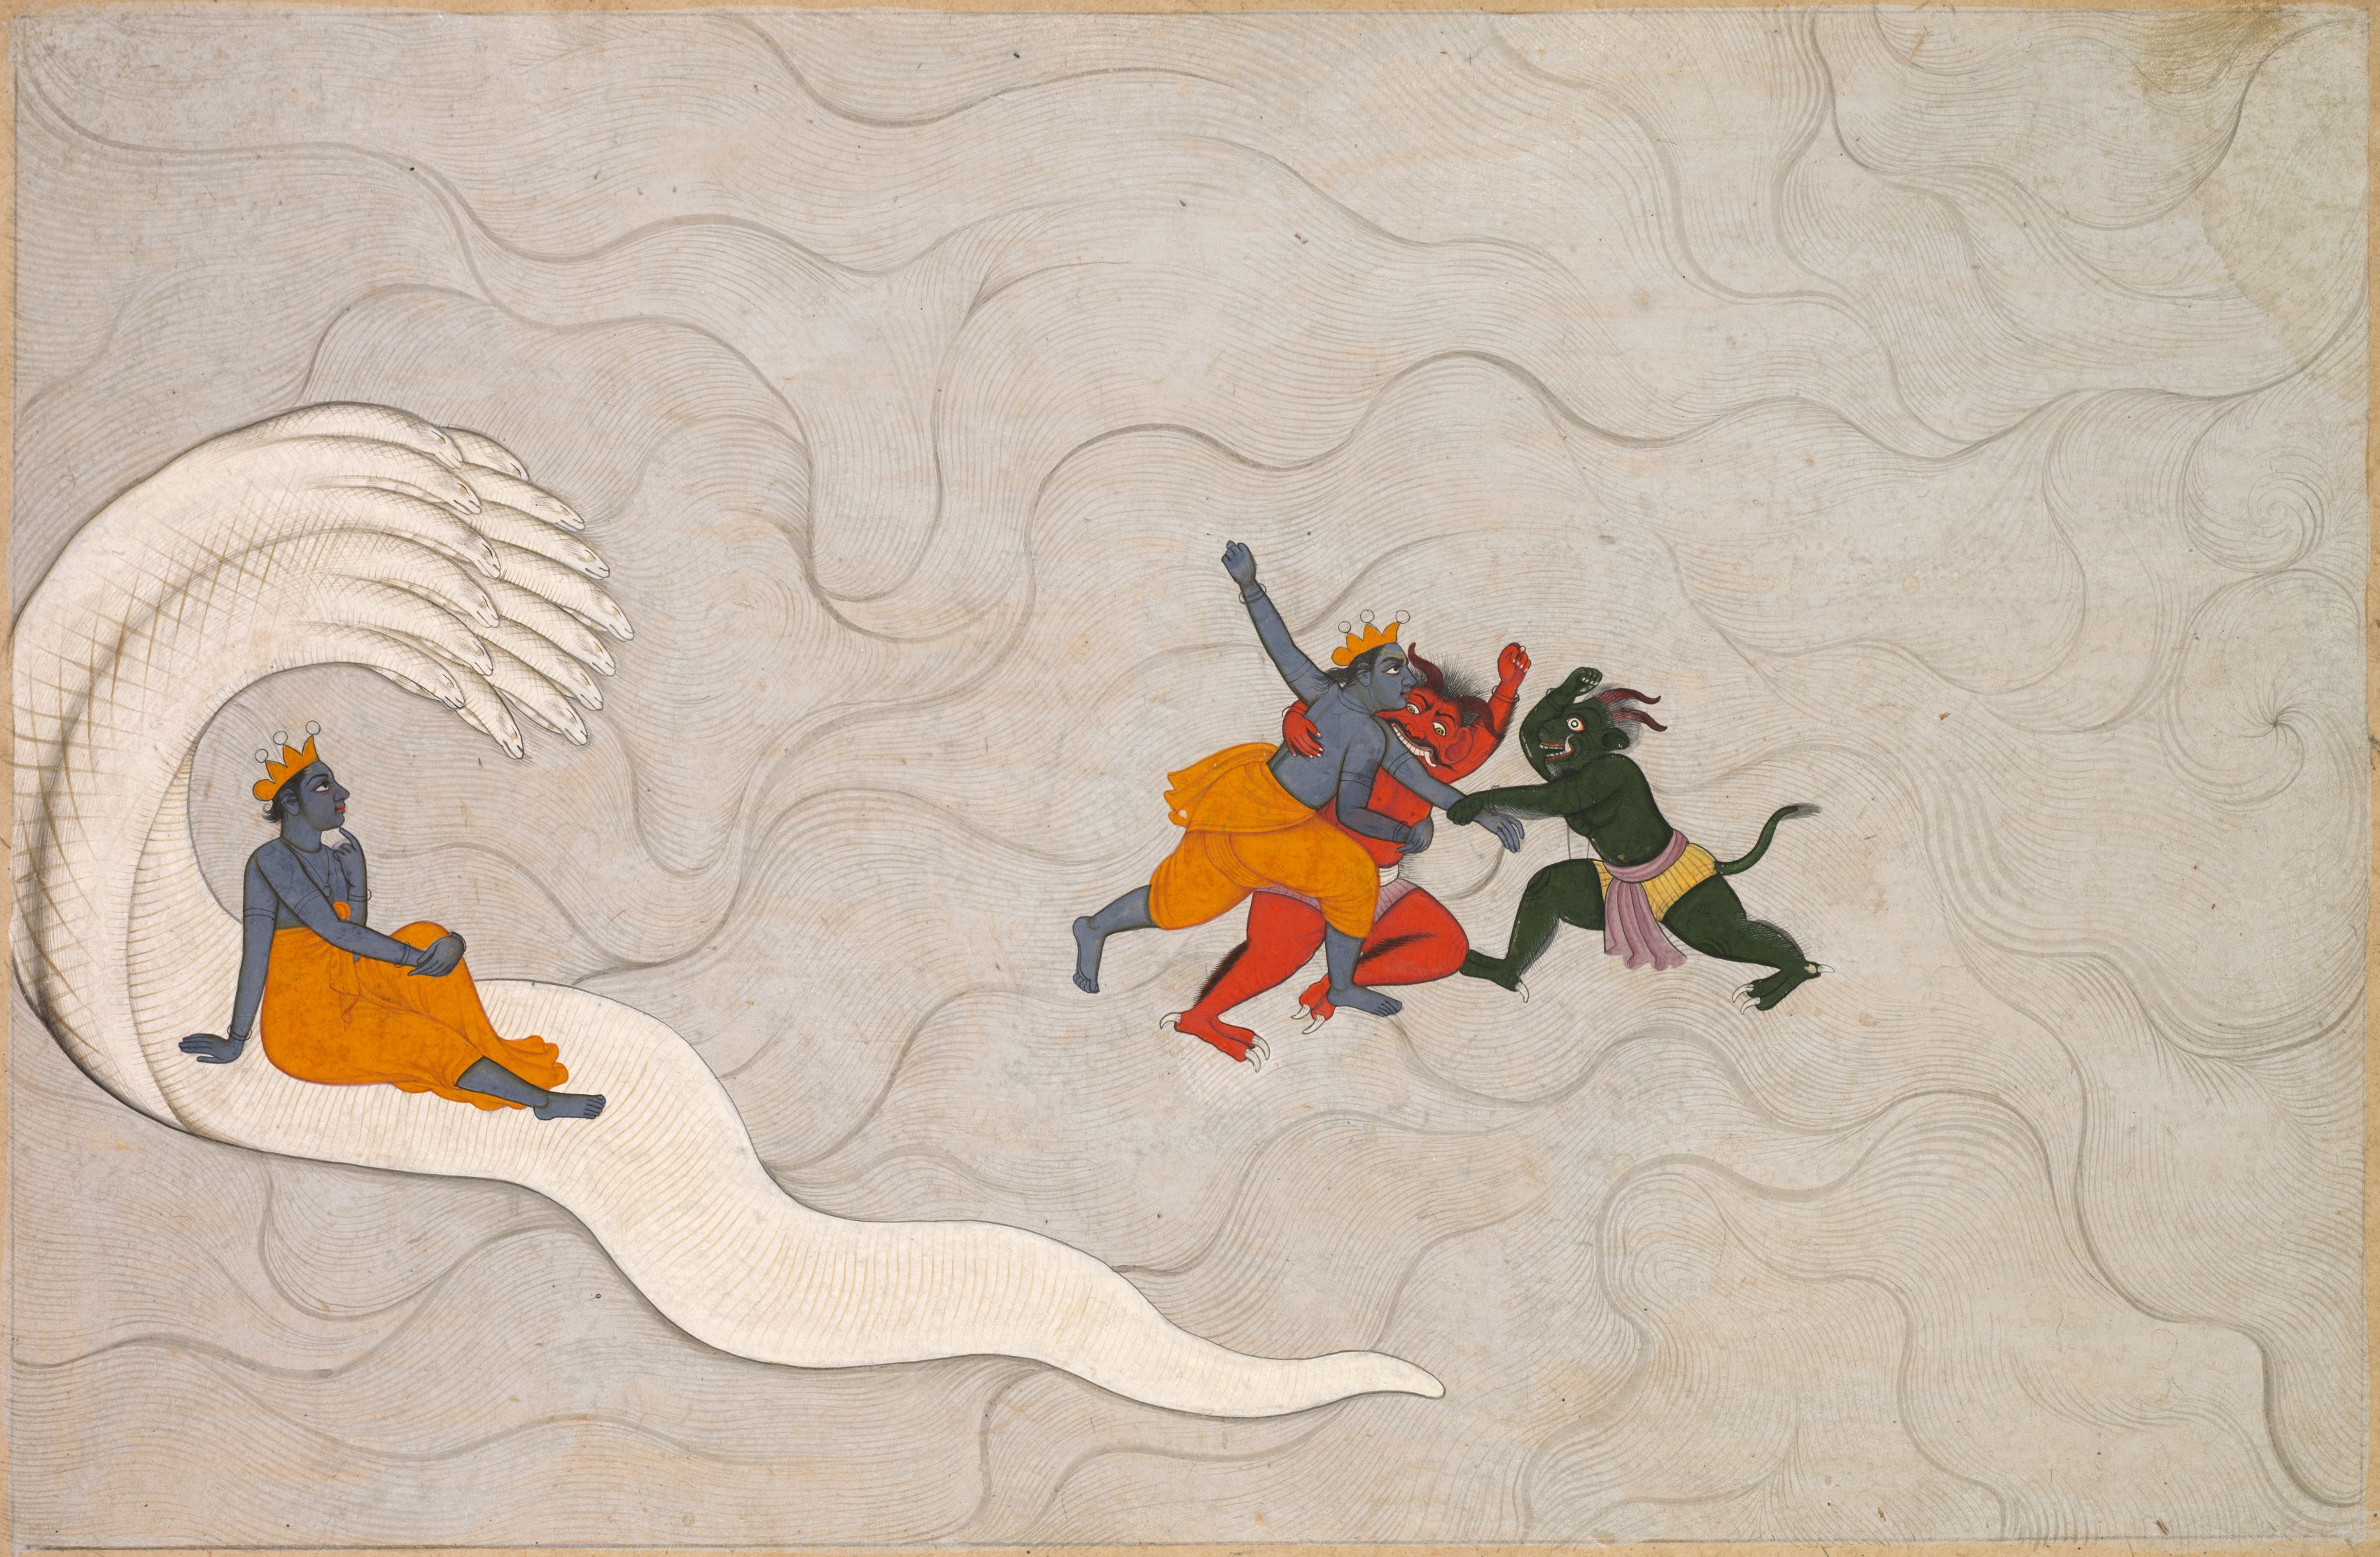 Vishnu Battles Madhu and Kaitabha, from a Markandeya Purana